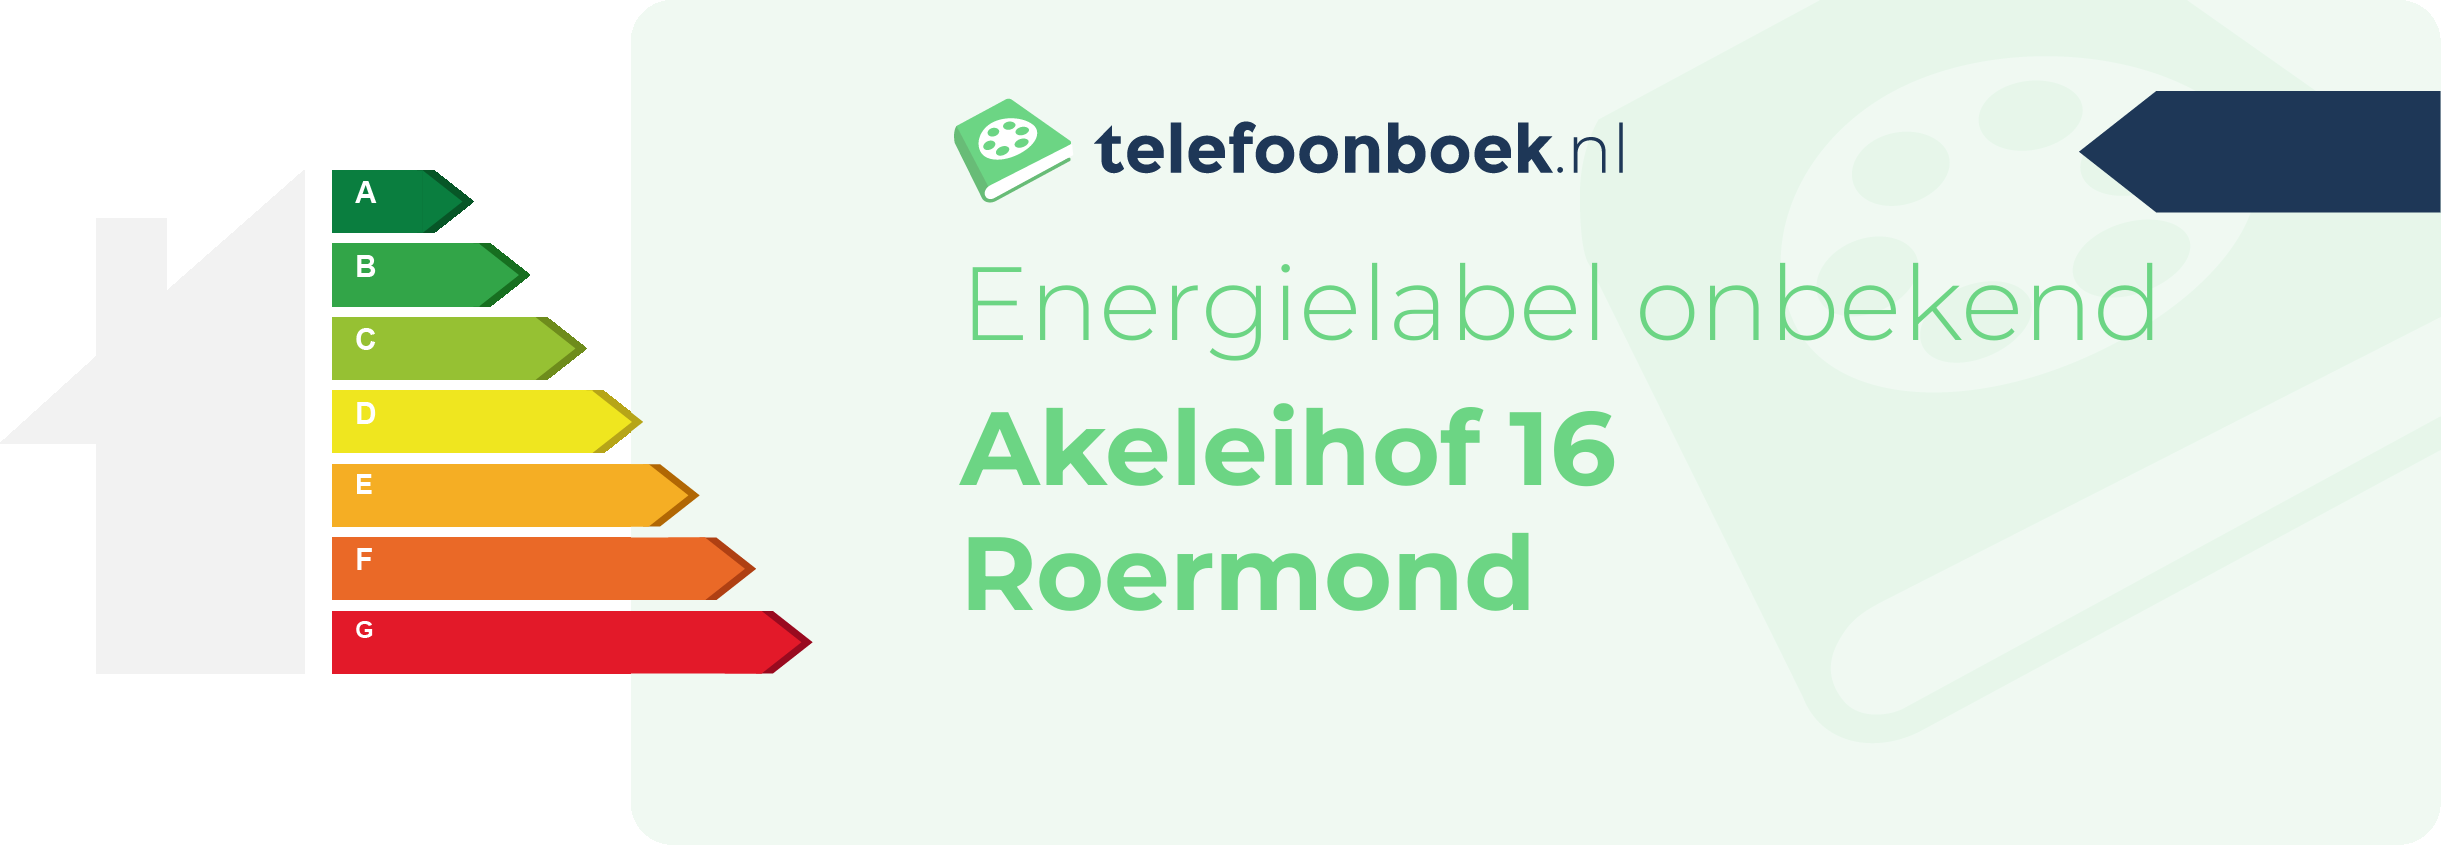 Energielabel Akeleihof 16 Roermond